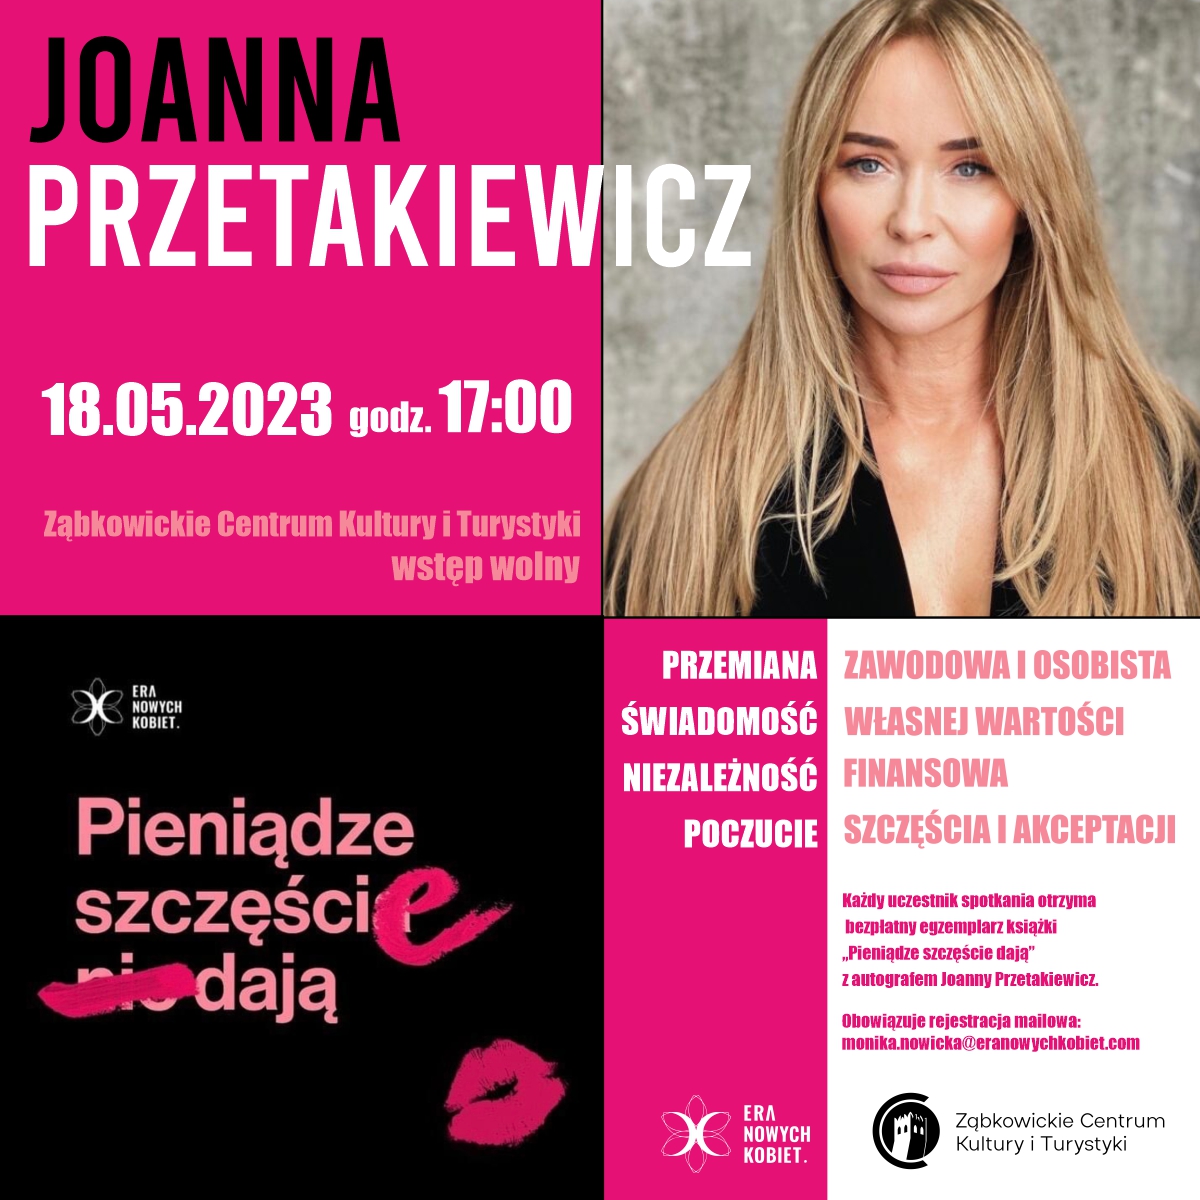 Plakat informacyjny o spotkaniu z Joanną Przetakiewicz 18.05.2023 o godzinie 17:00 w Ząbkowickim Centrum Kultury i Turystyki.